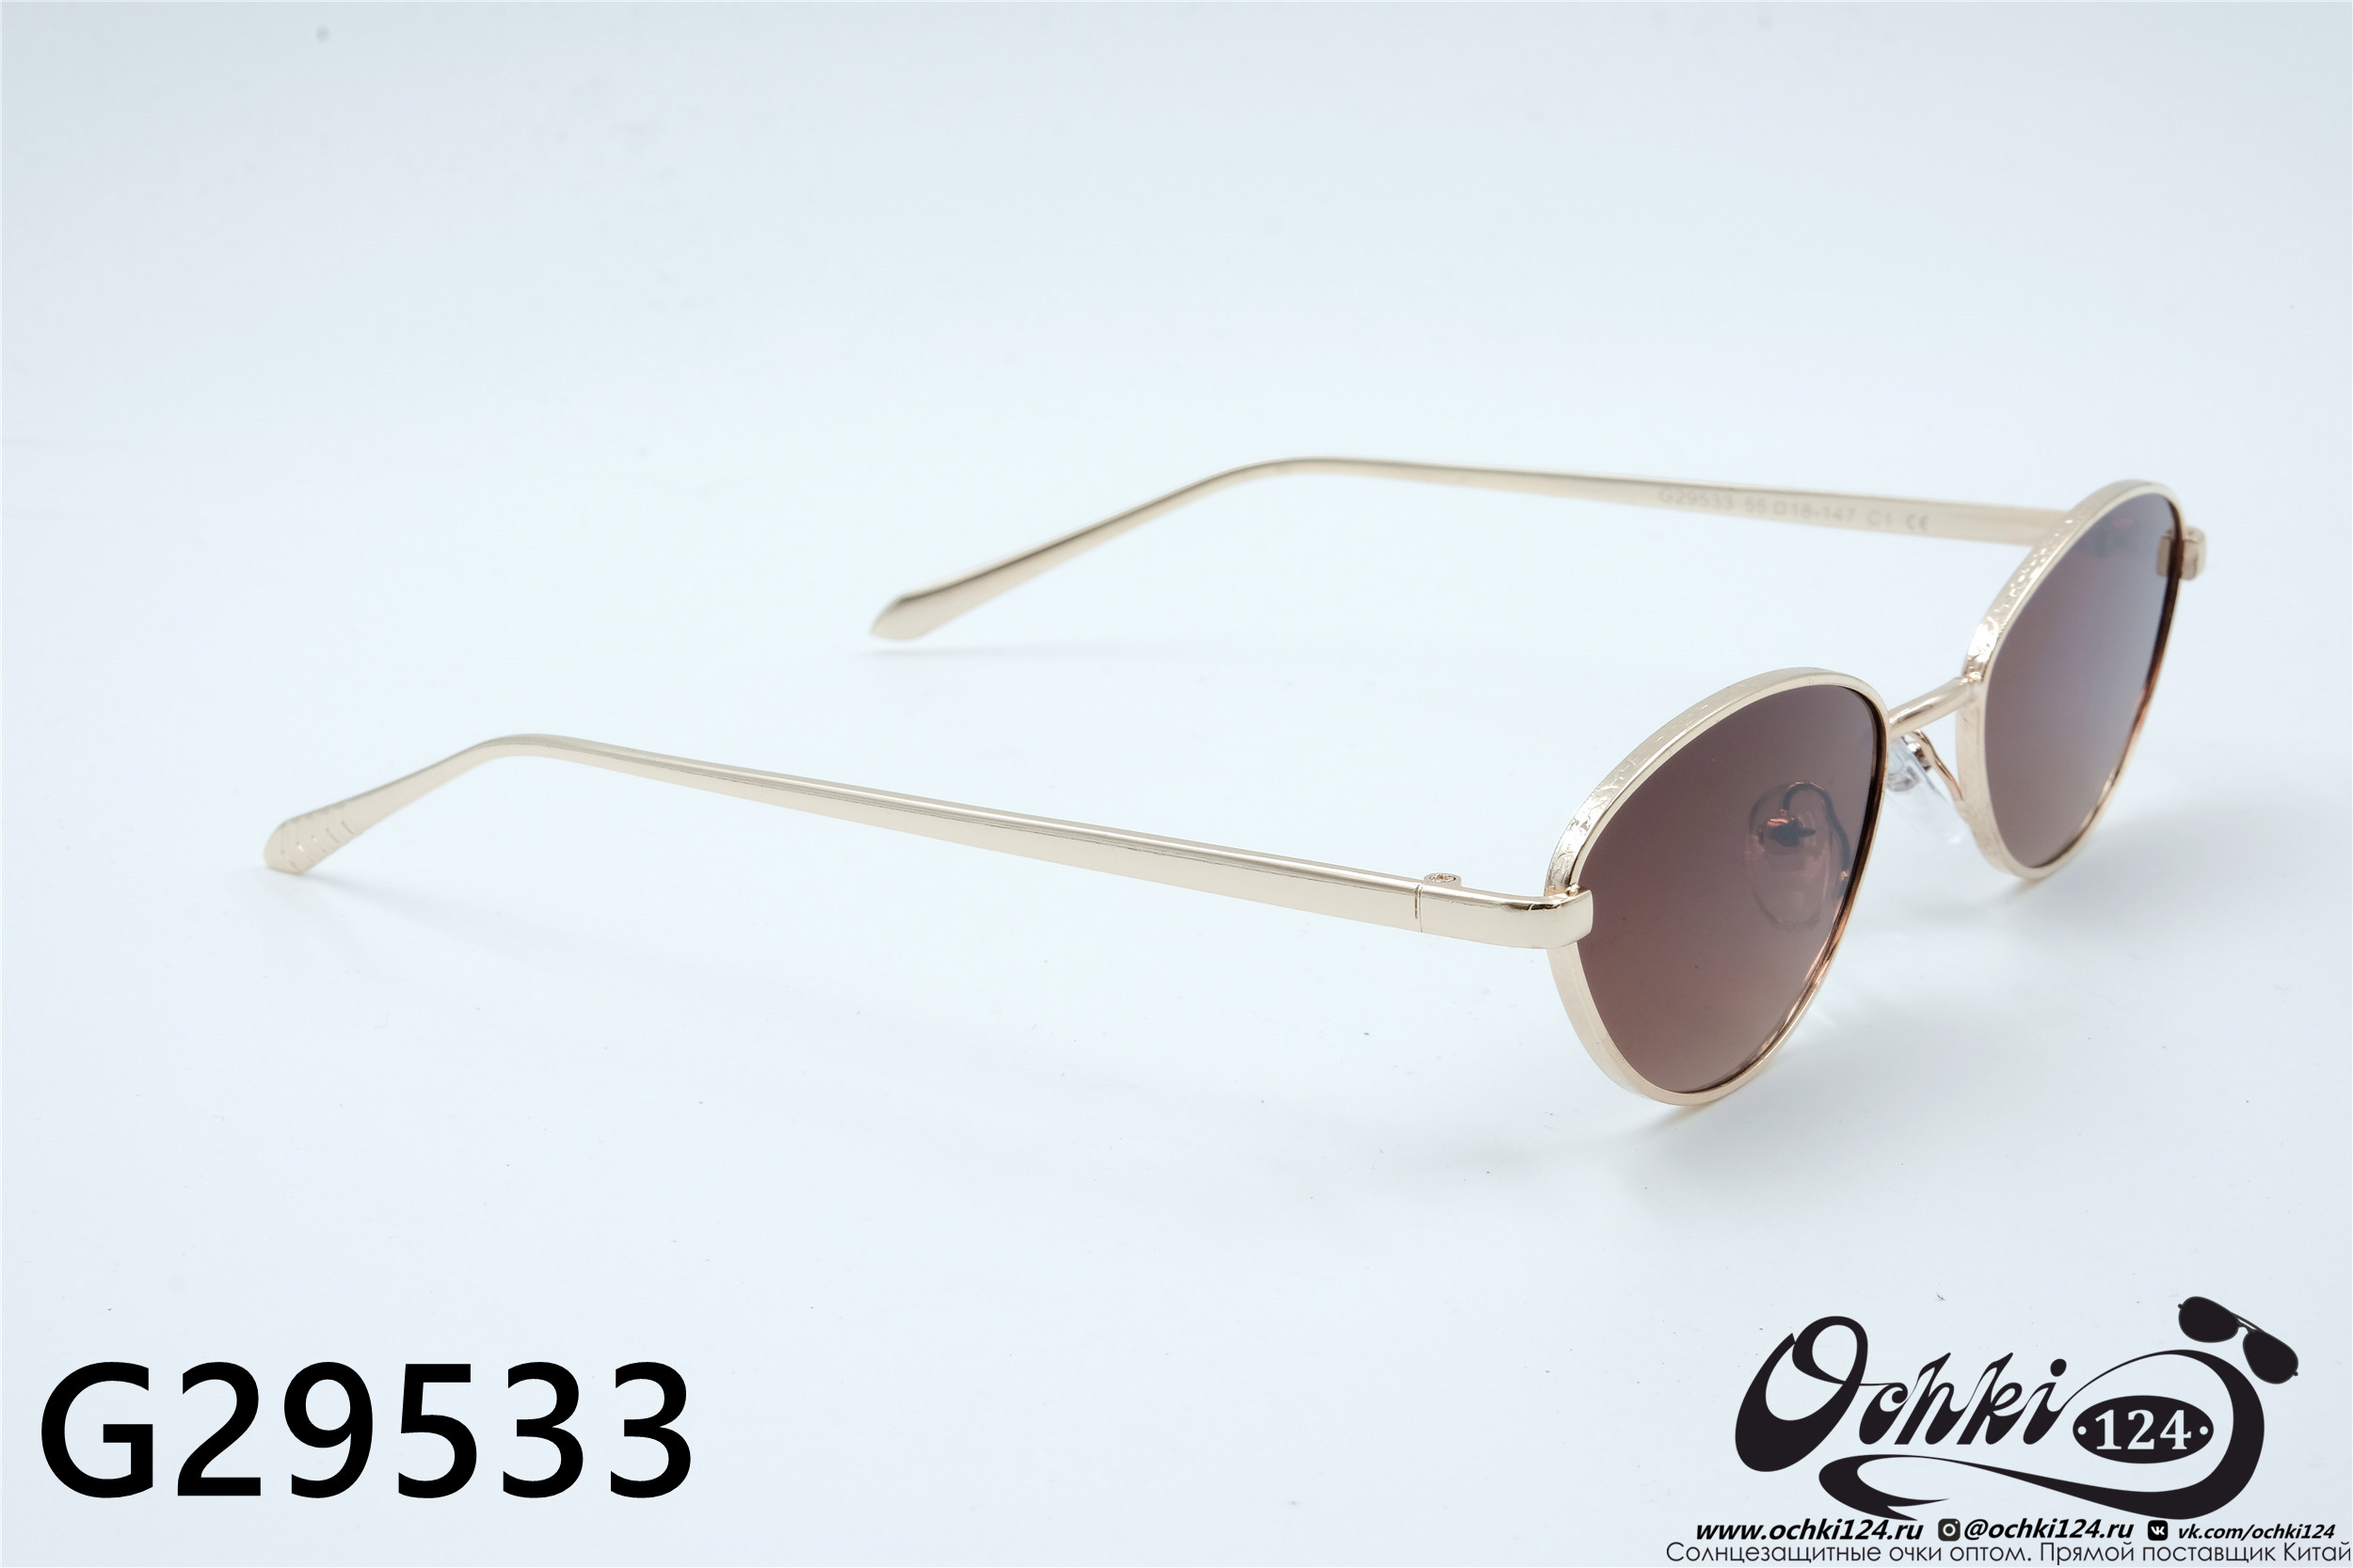  Солнцезащитные очки картинка 2022 Женские Лисички 2022 G29533-1 